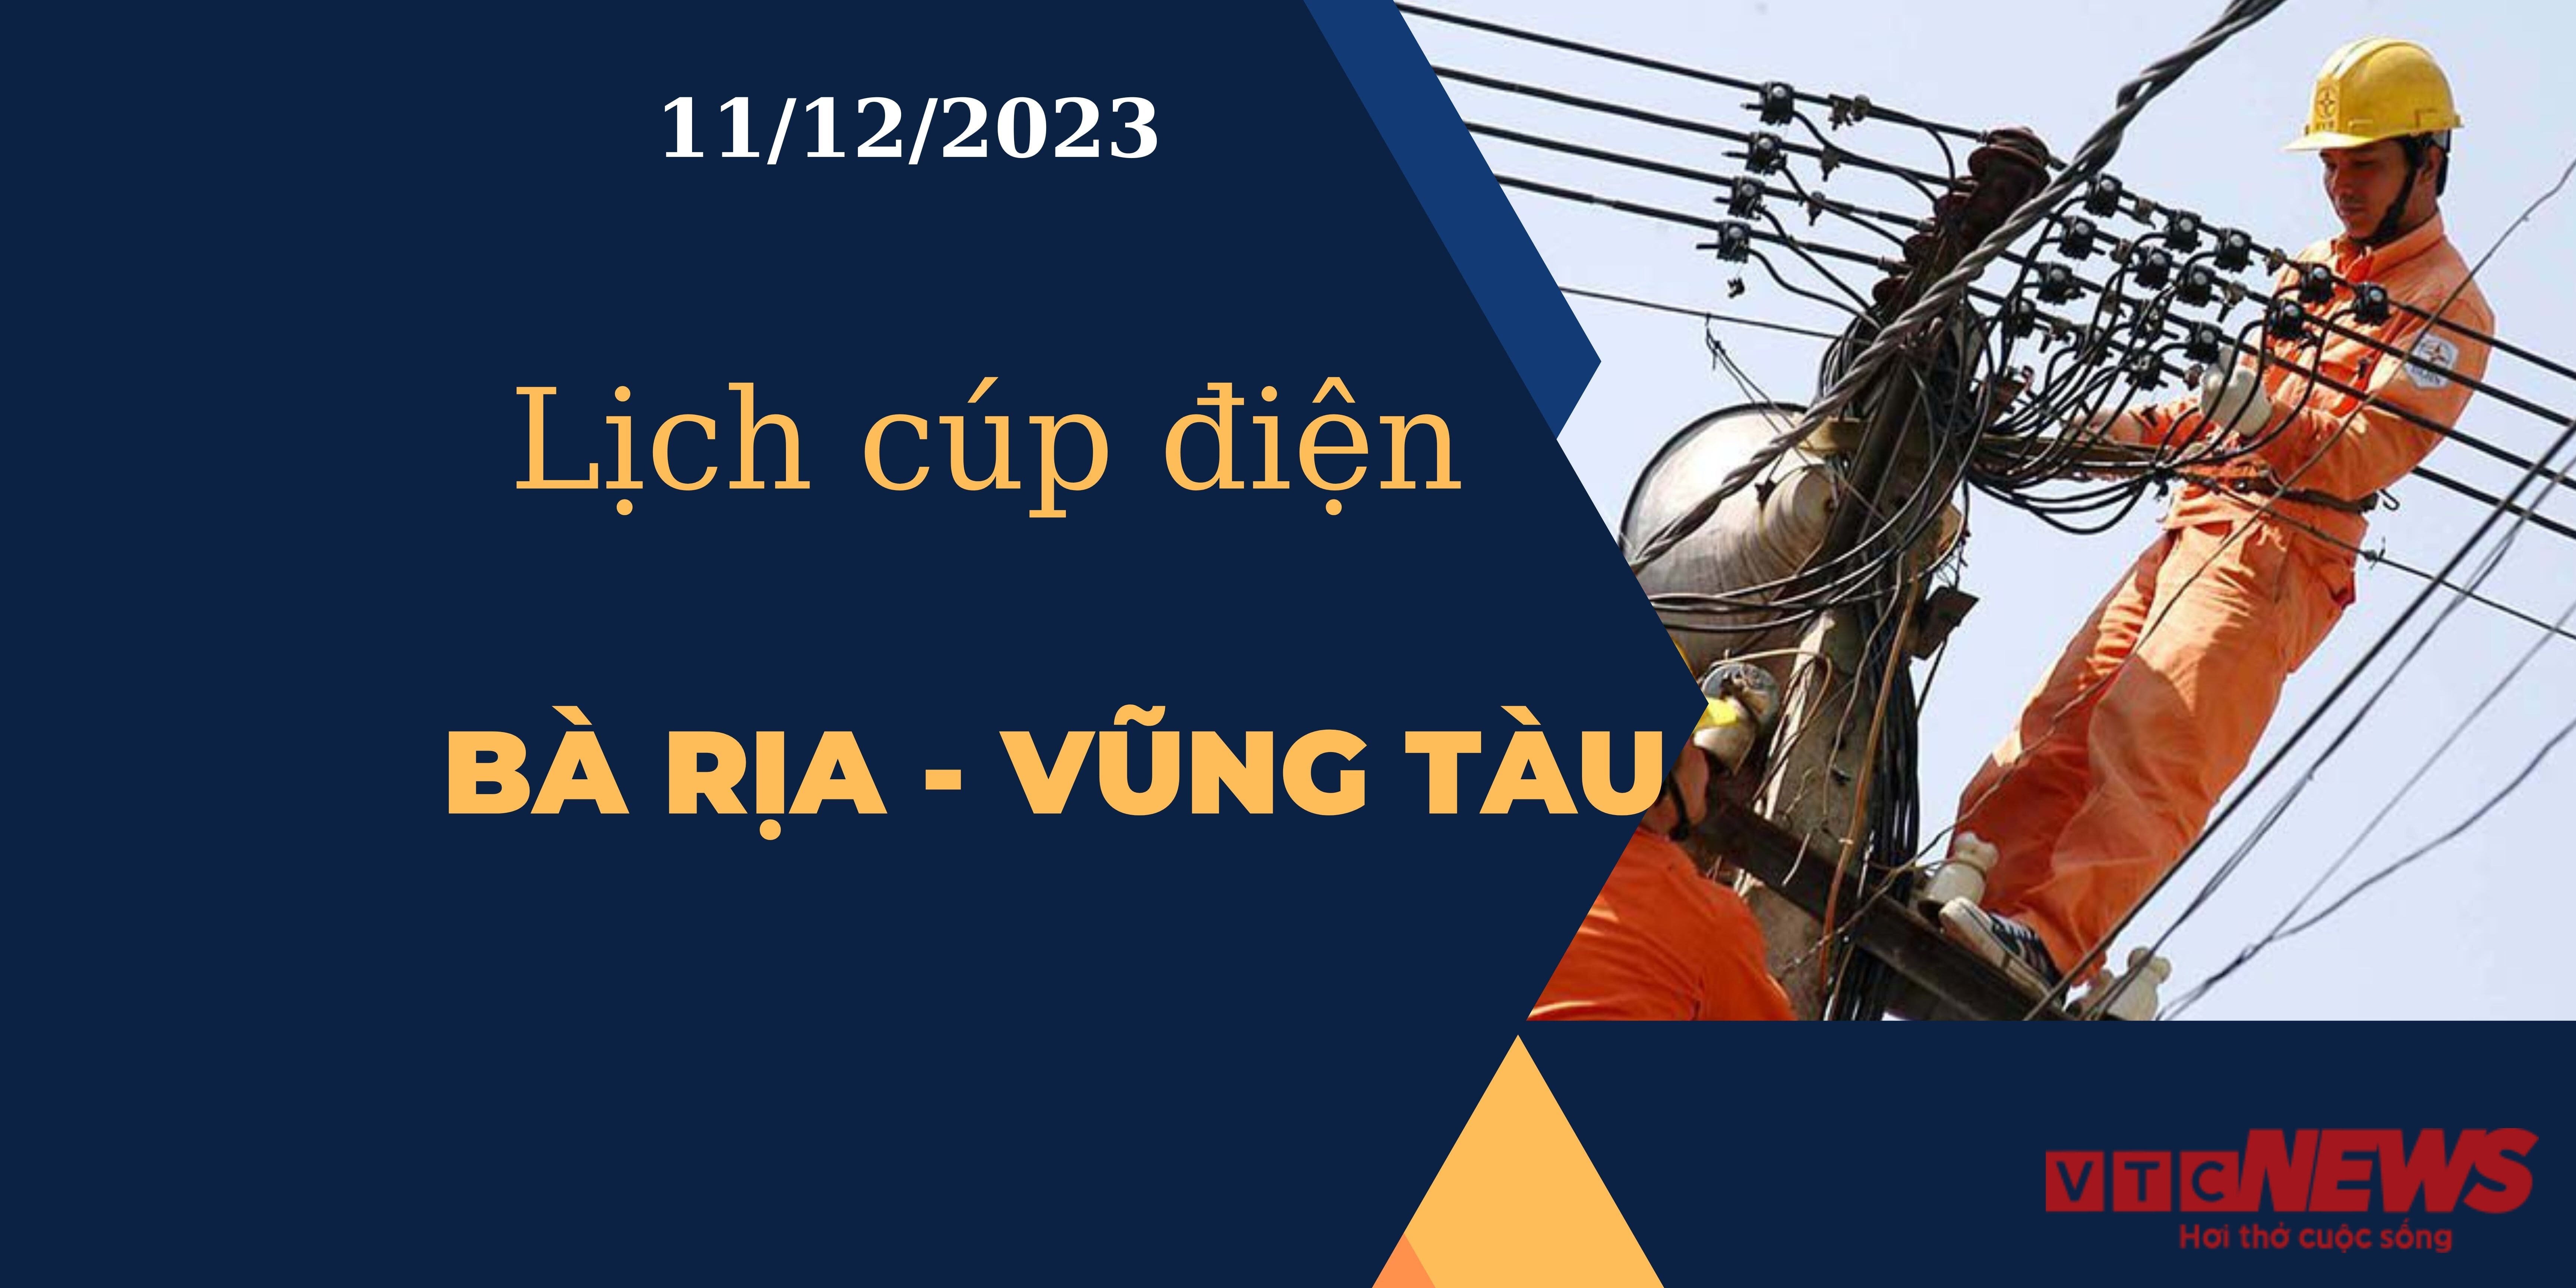 Lịch cúp điện Bà Rịa - Vũng Tàu ngày 11/12/2023